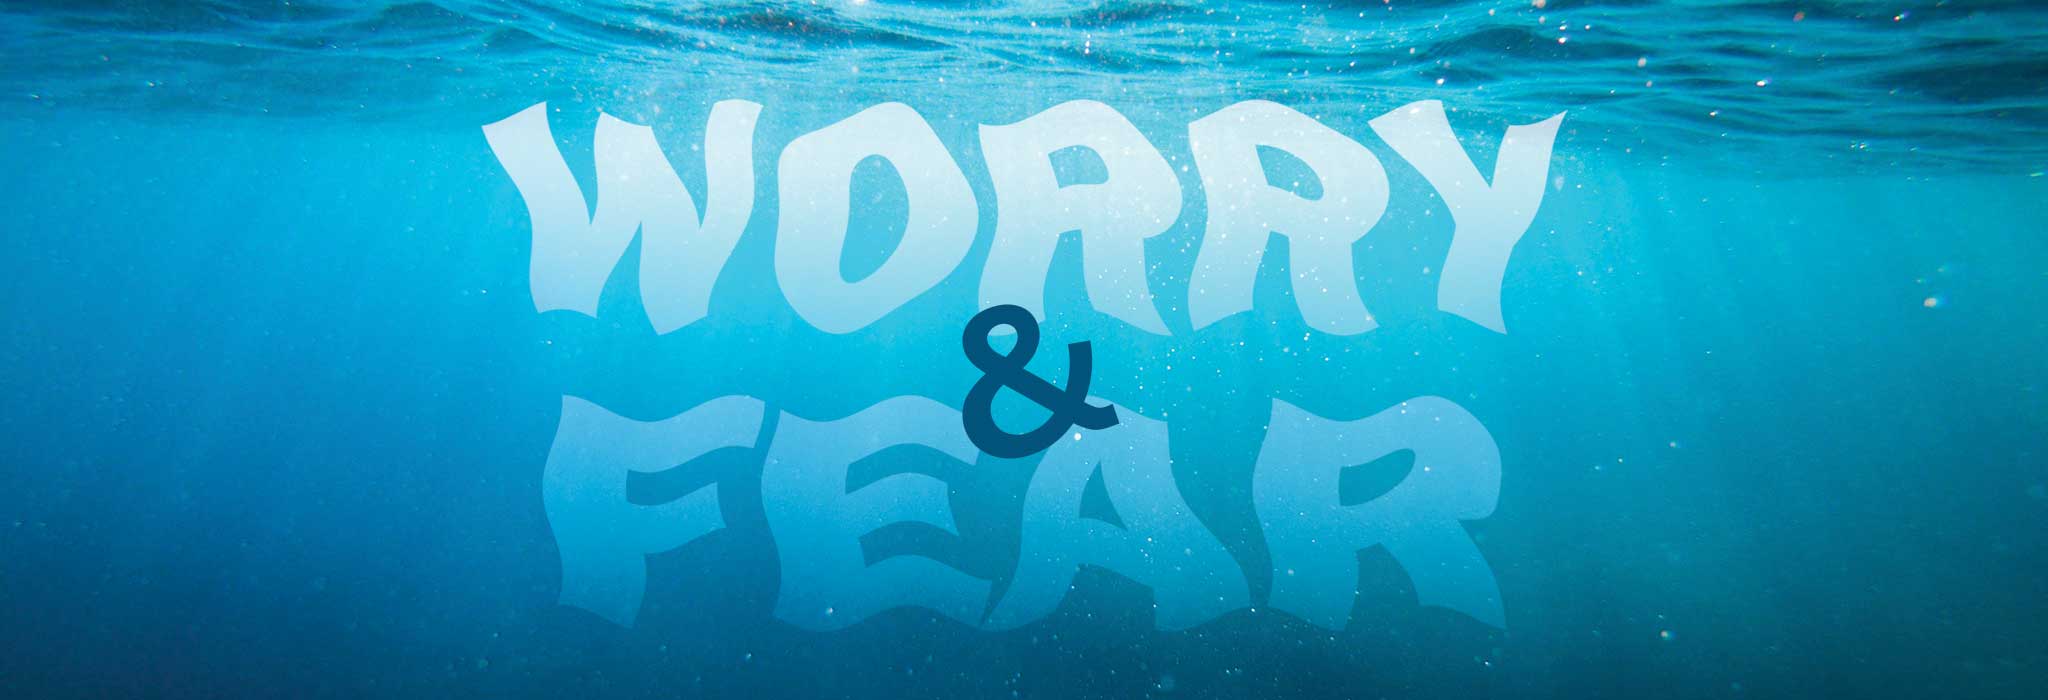 Worry & Fear